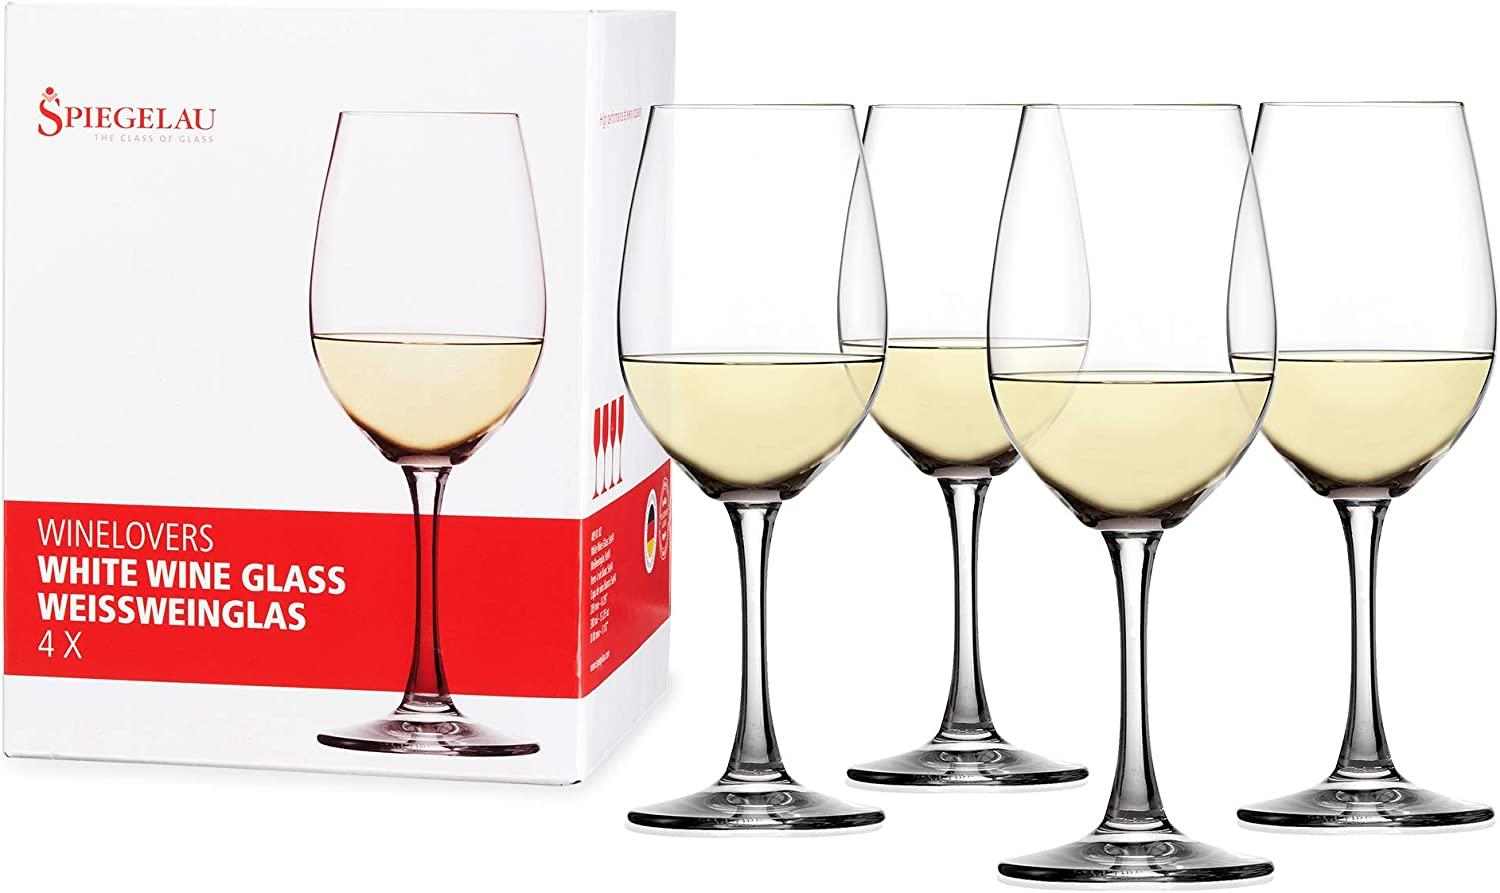 Spiegelau Winelovers Weißwein, 4er Set, Weißweinkelch, Weißweinglas, Weinglas, Kristallglas, 380 ml, 4090182 Bild 1